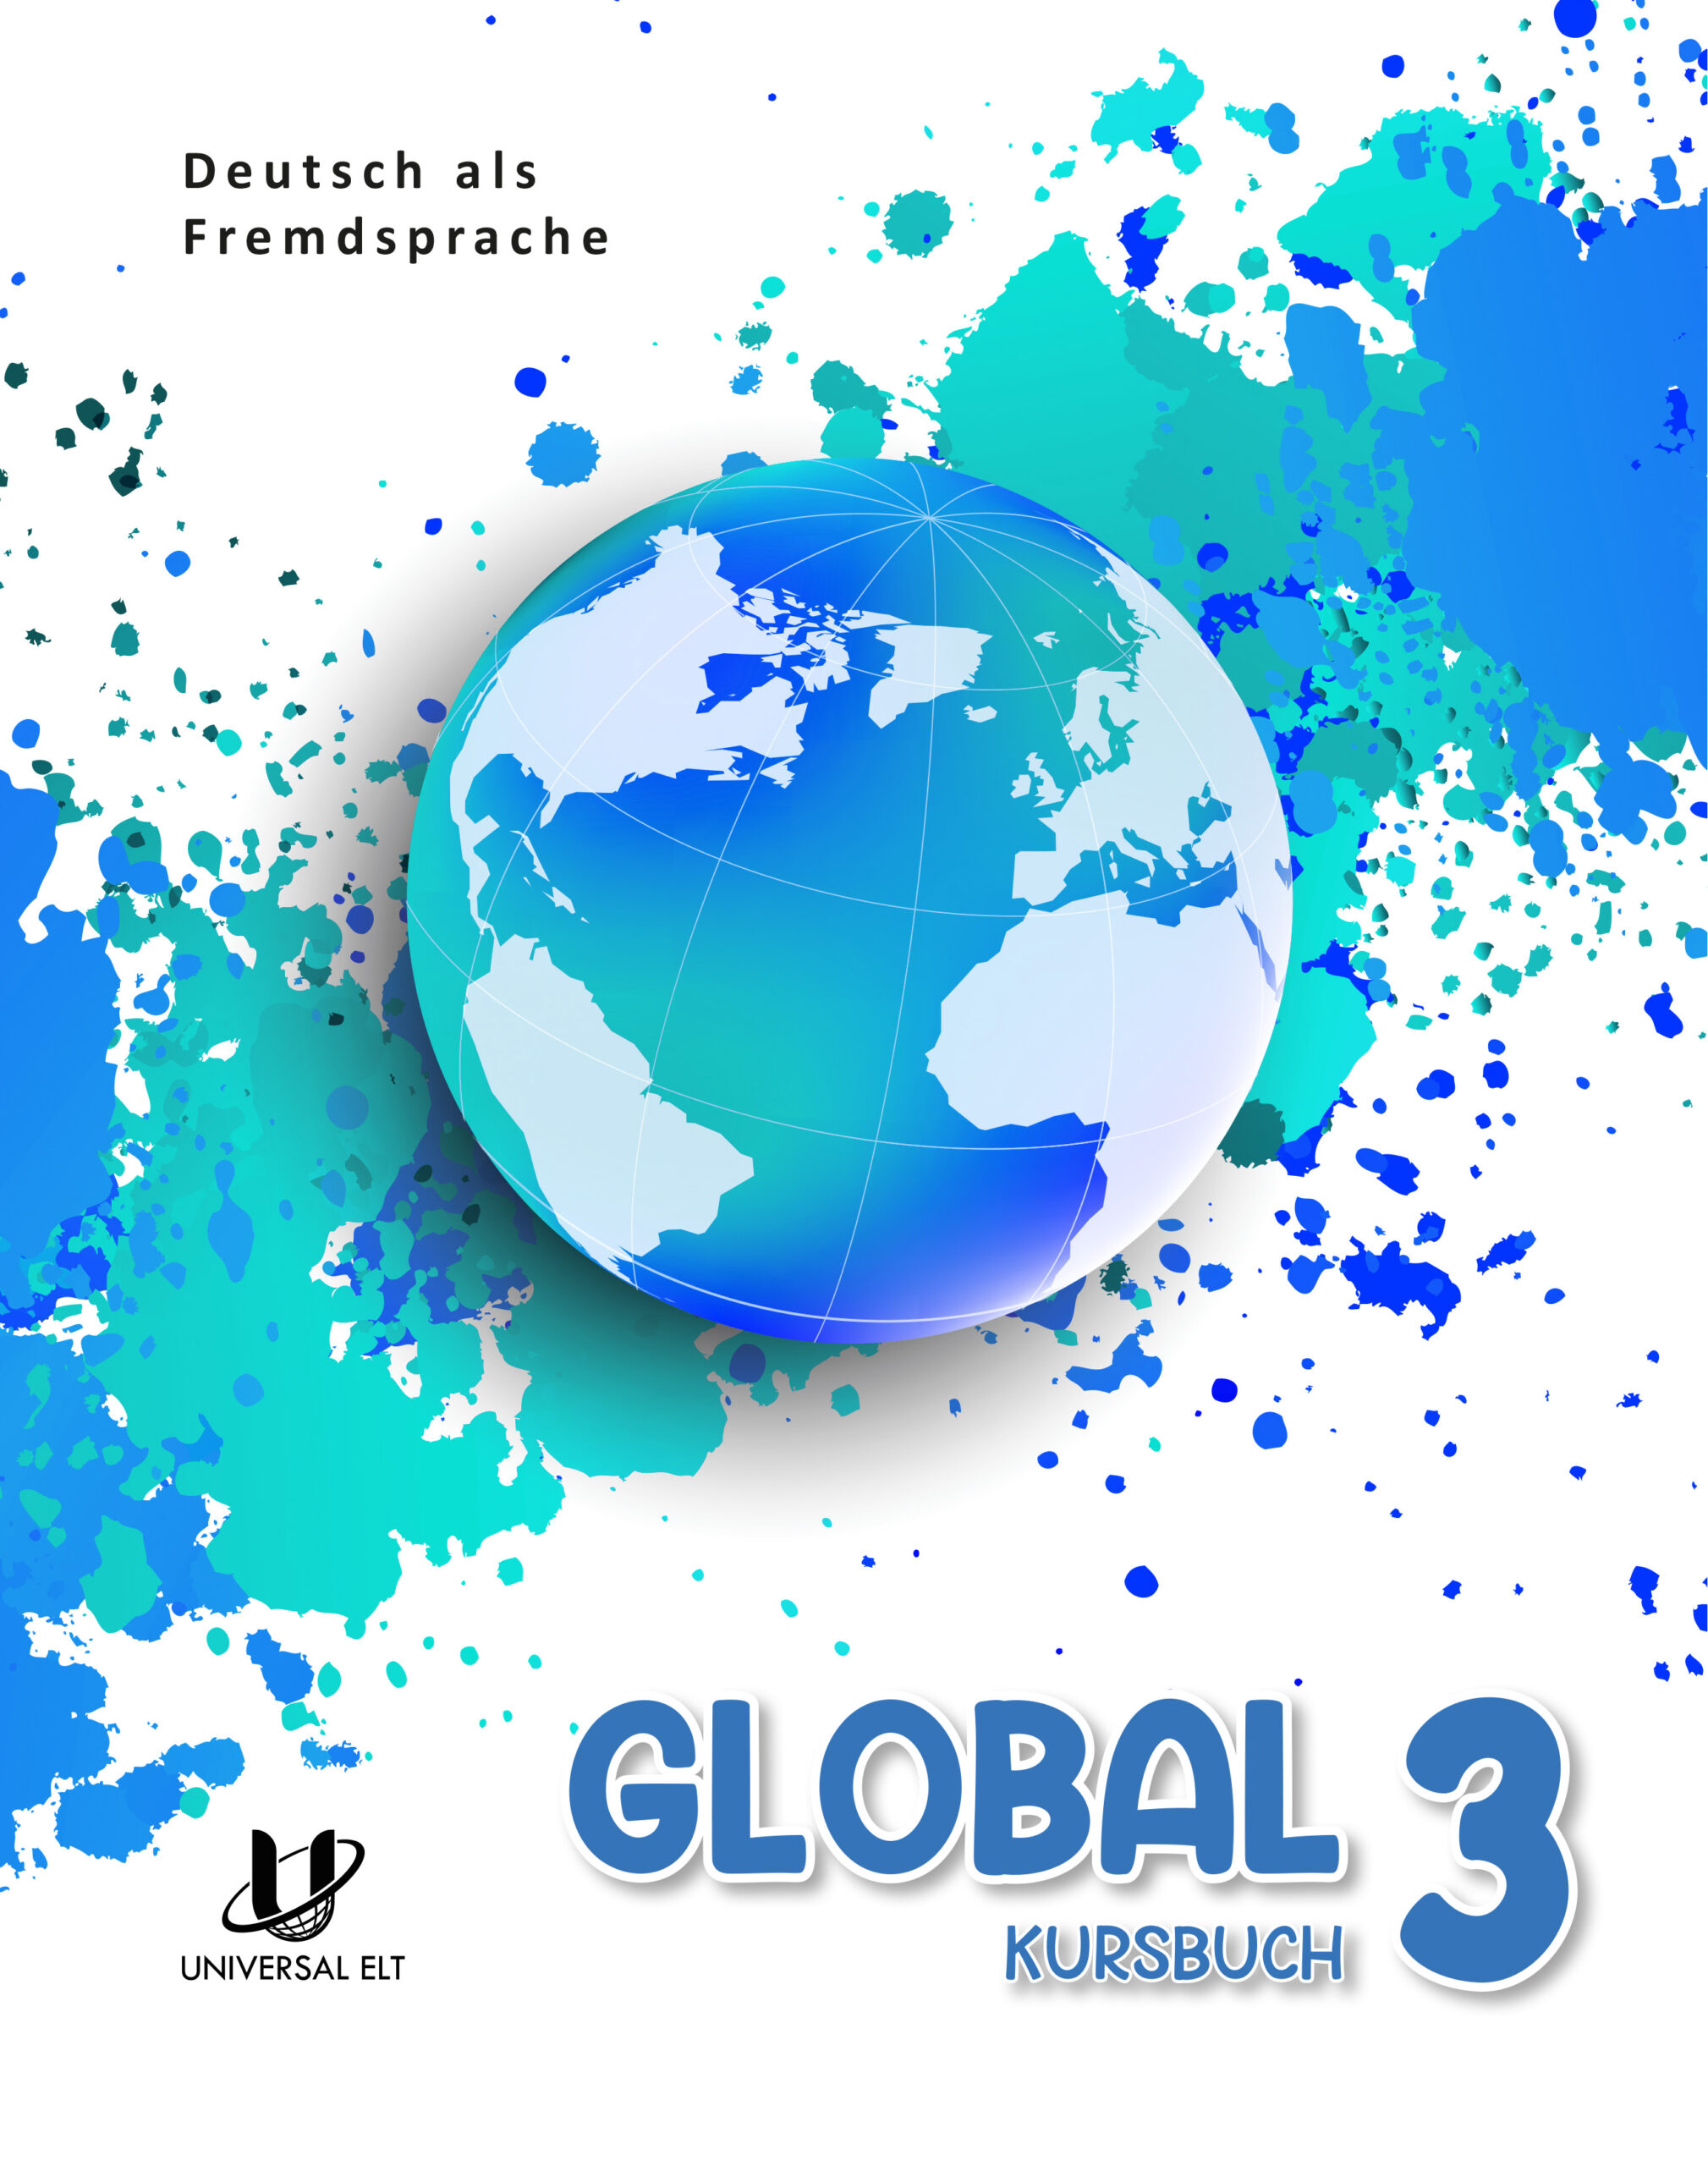 Global 3 Kursbuch